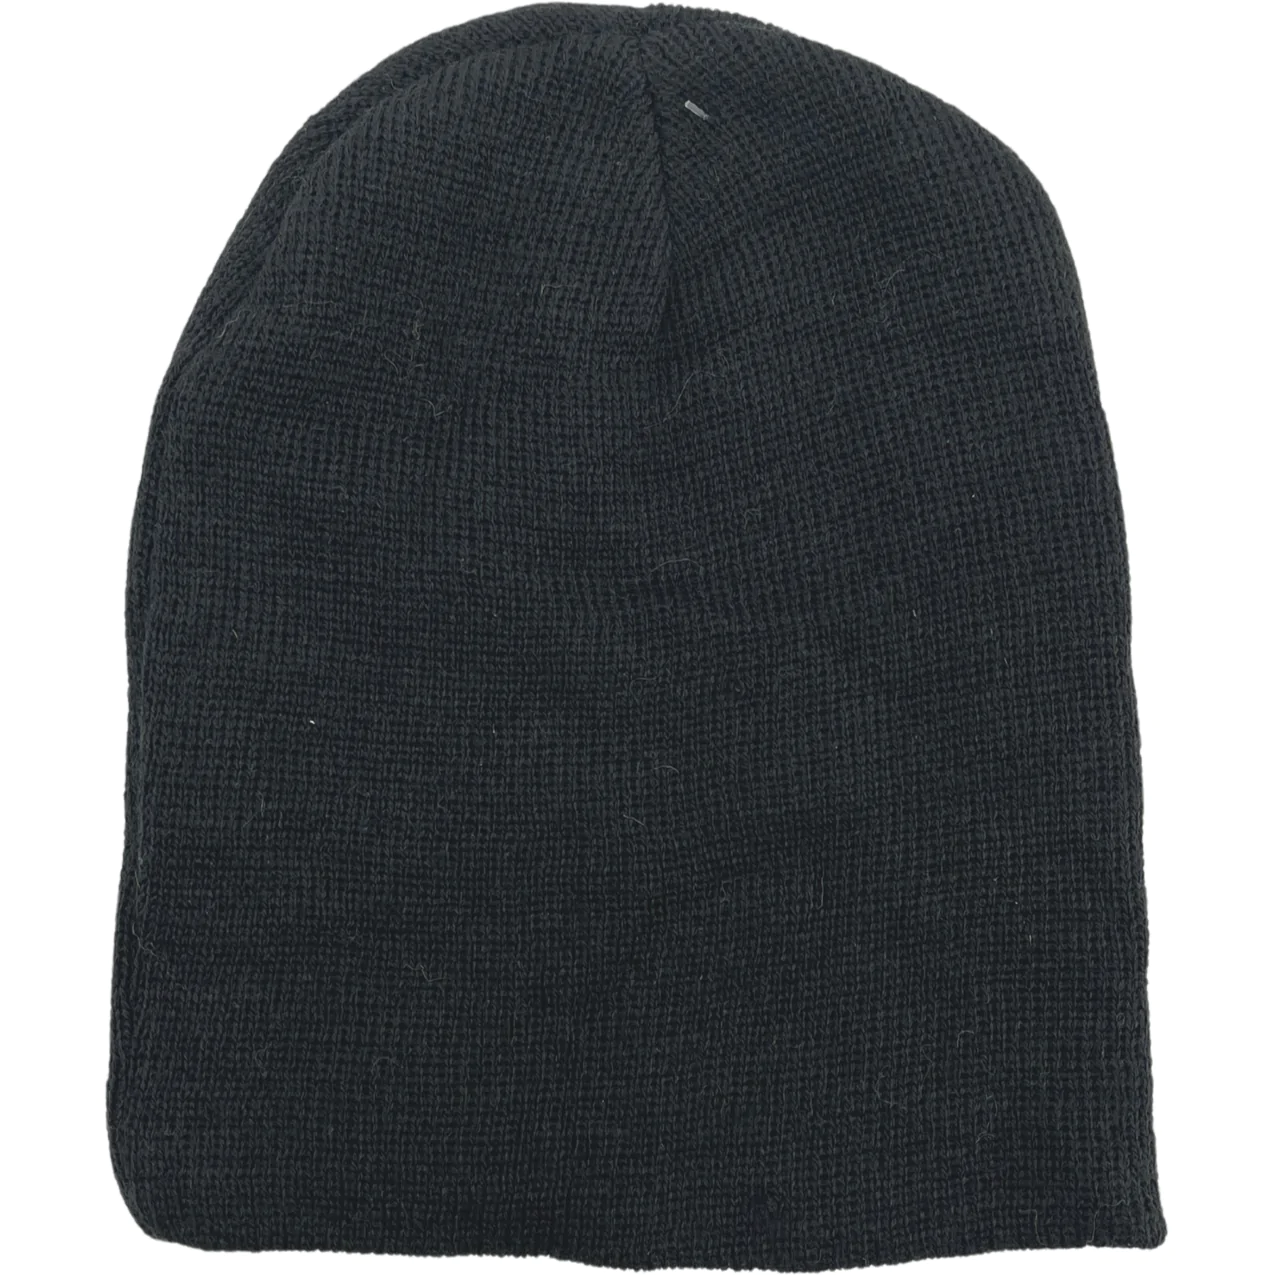 Children's Winter Hat / 2 Pack / Green & Black / Winter Toque / One Size